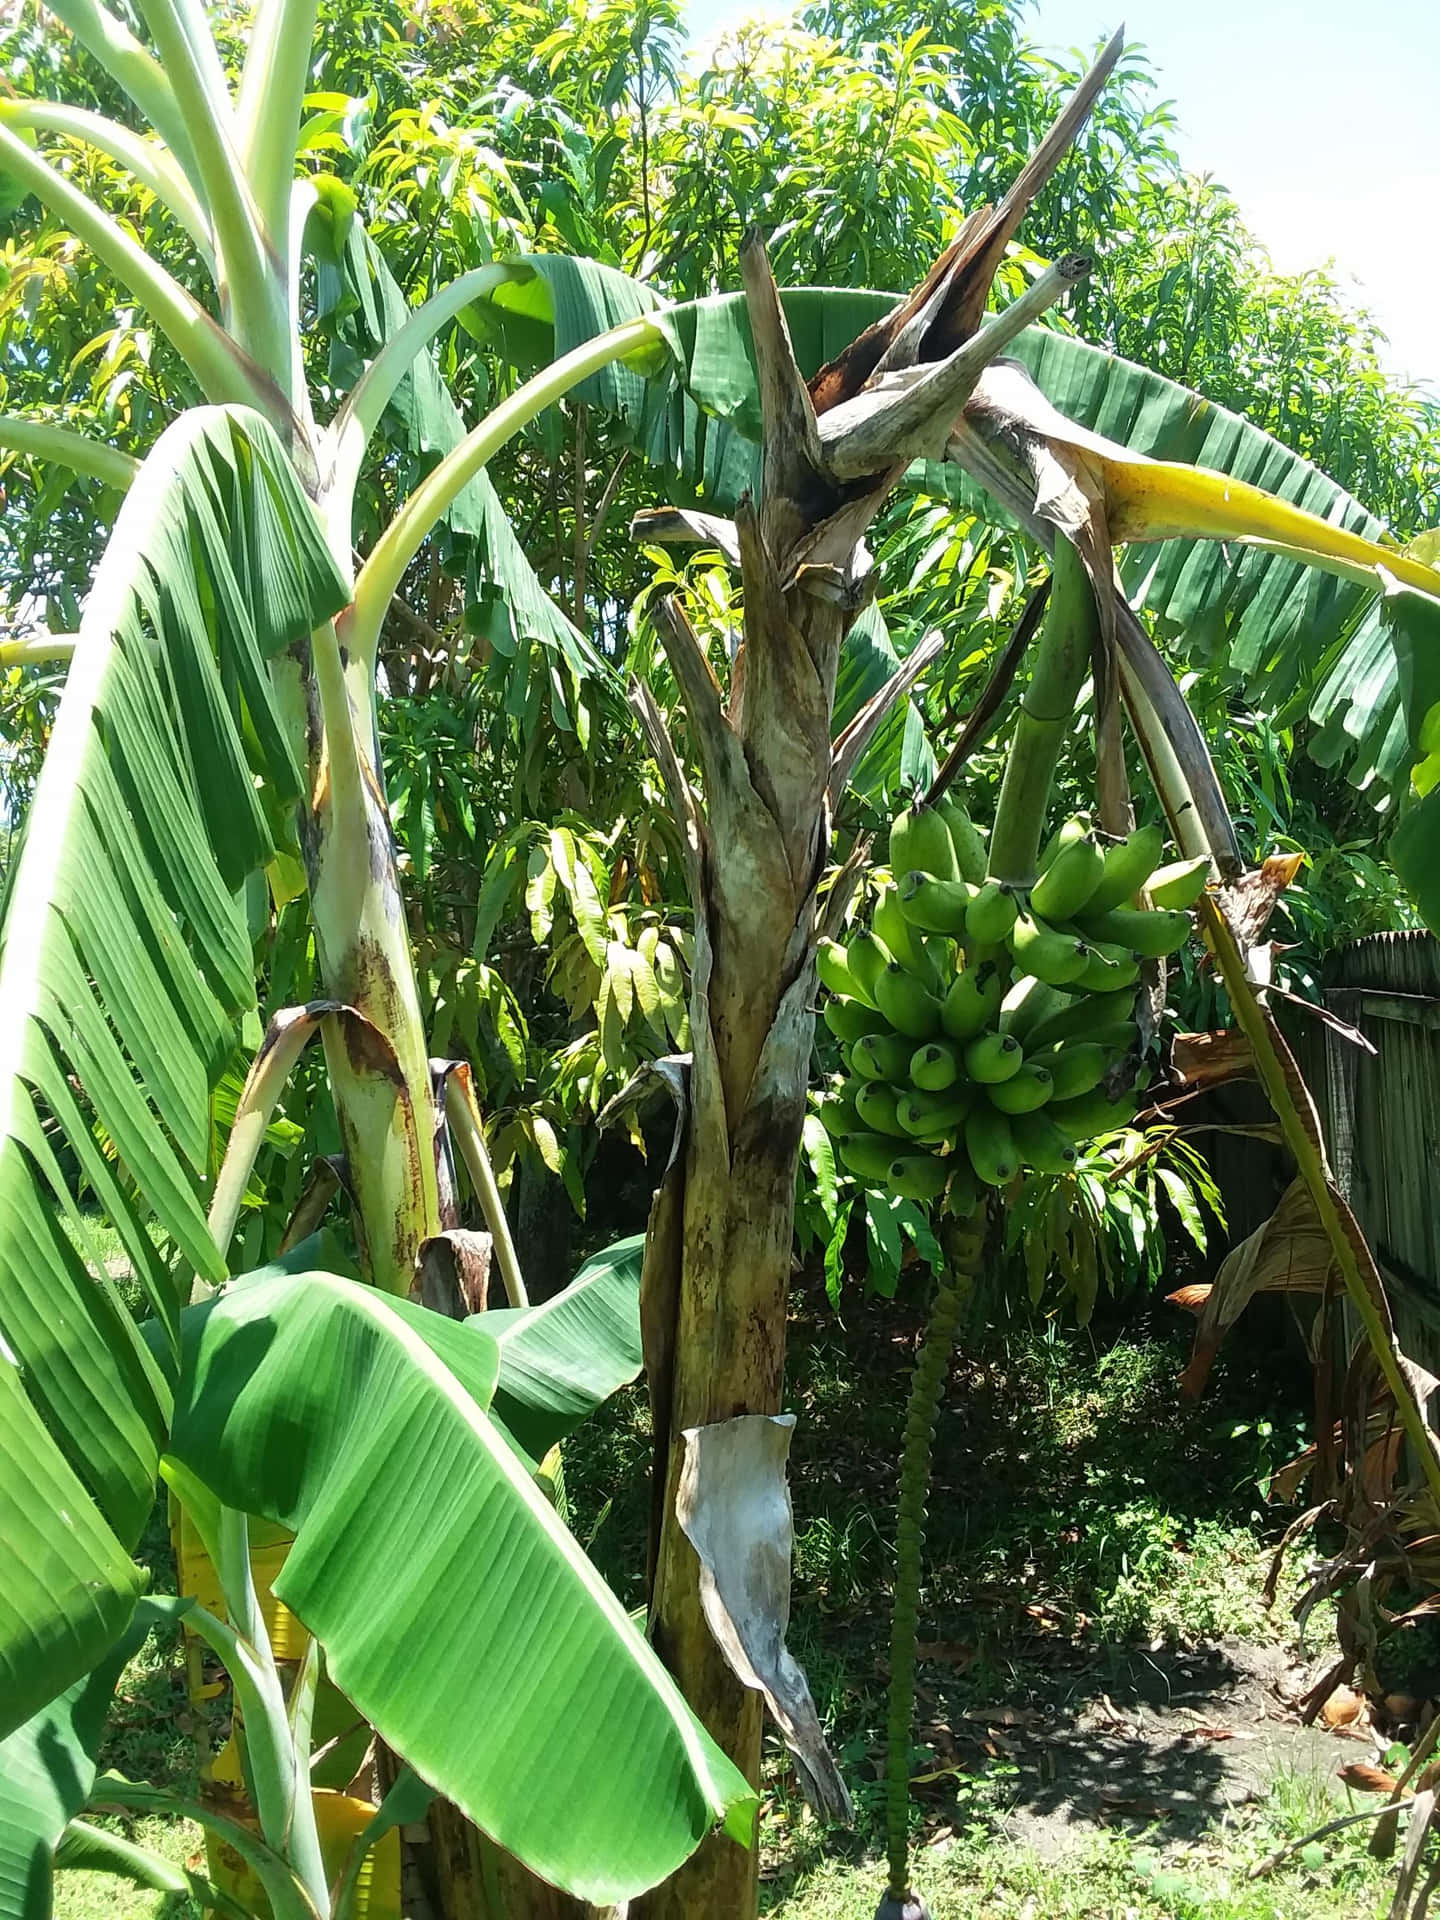 Unoasis De Frutas Coloridas - Un Árbol De Plátanos